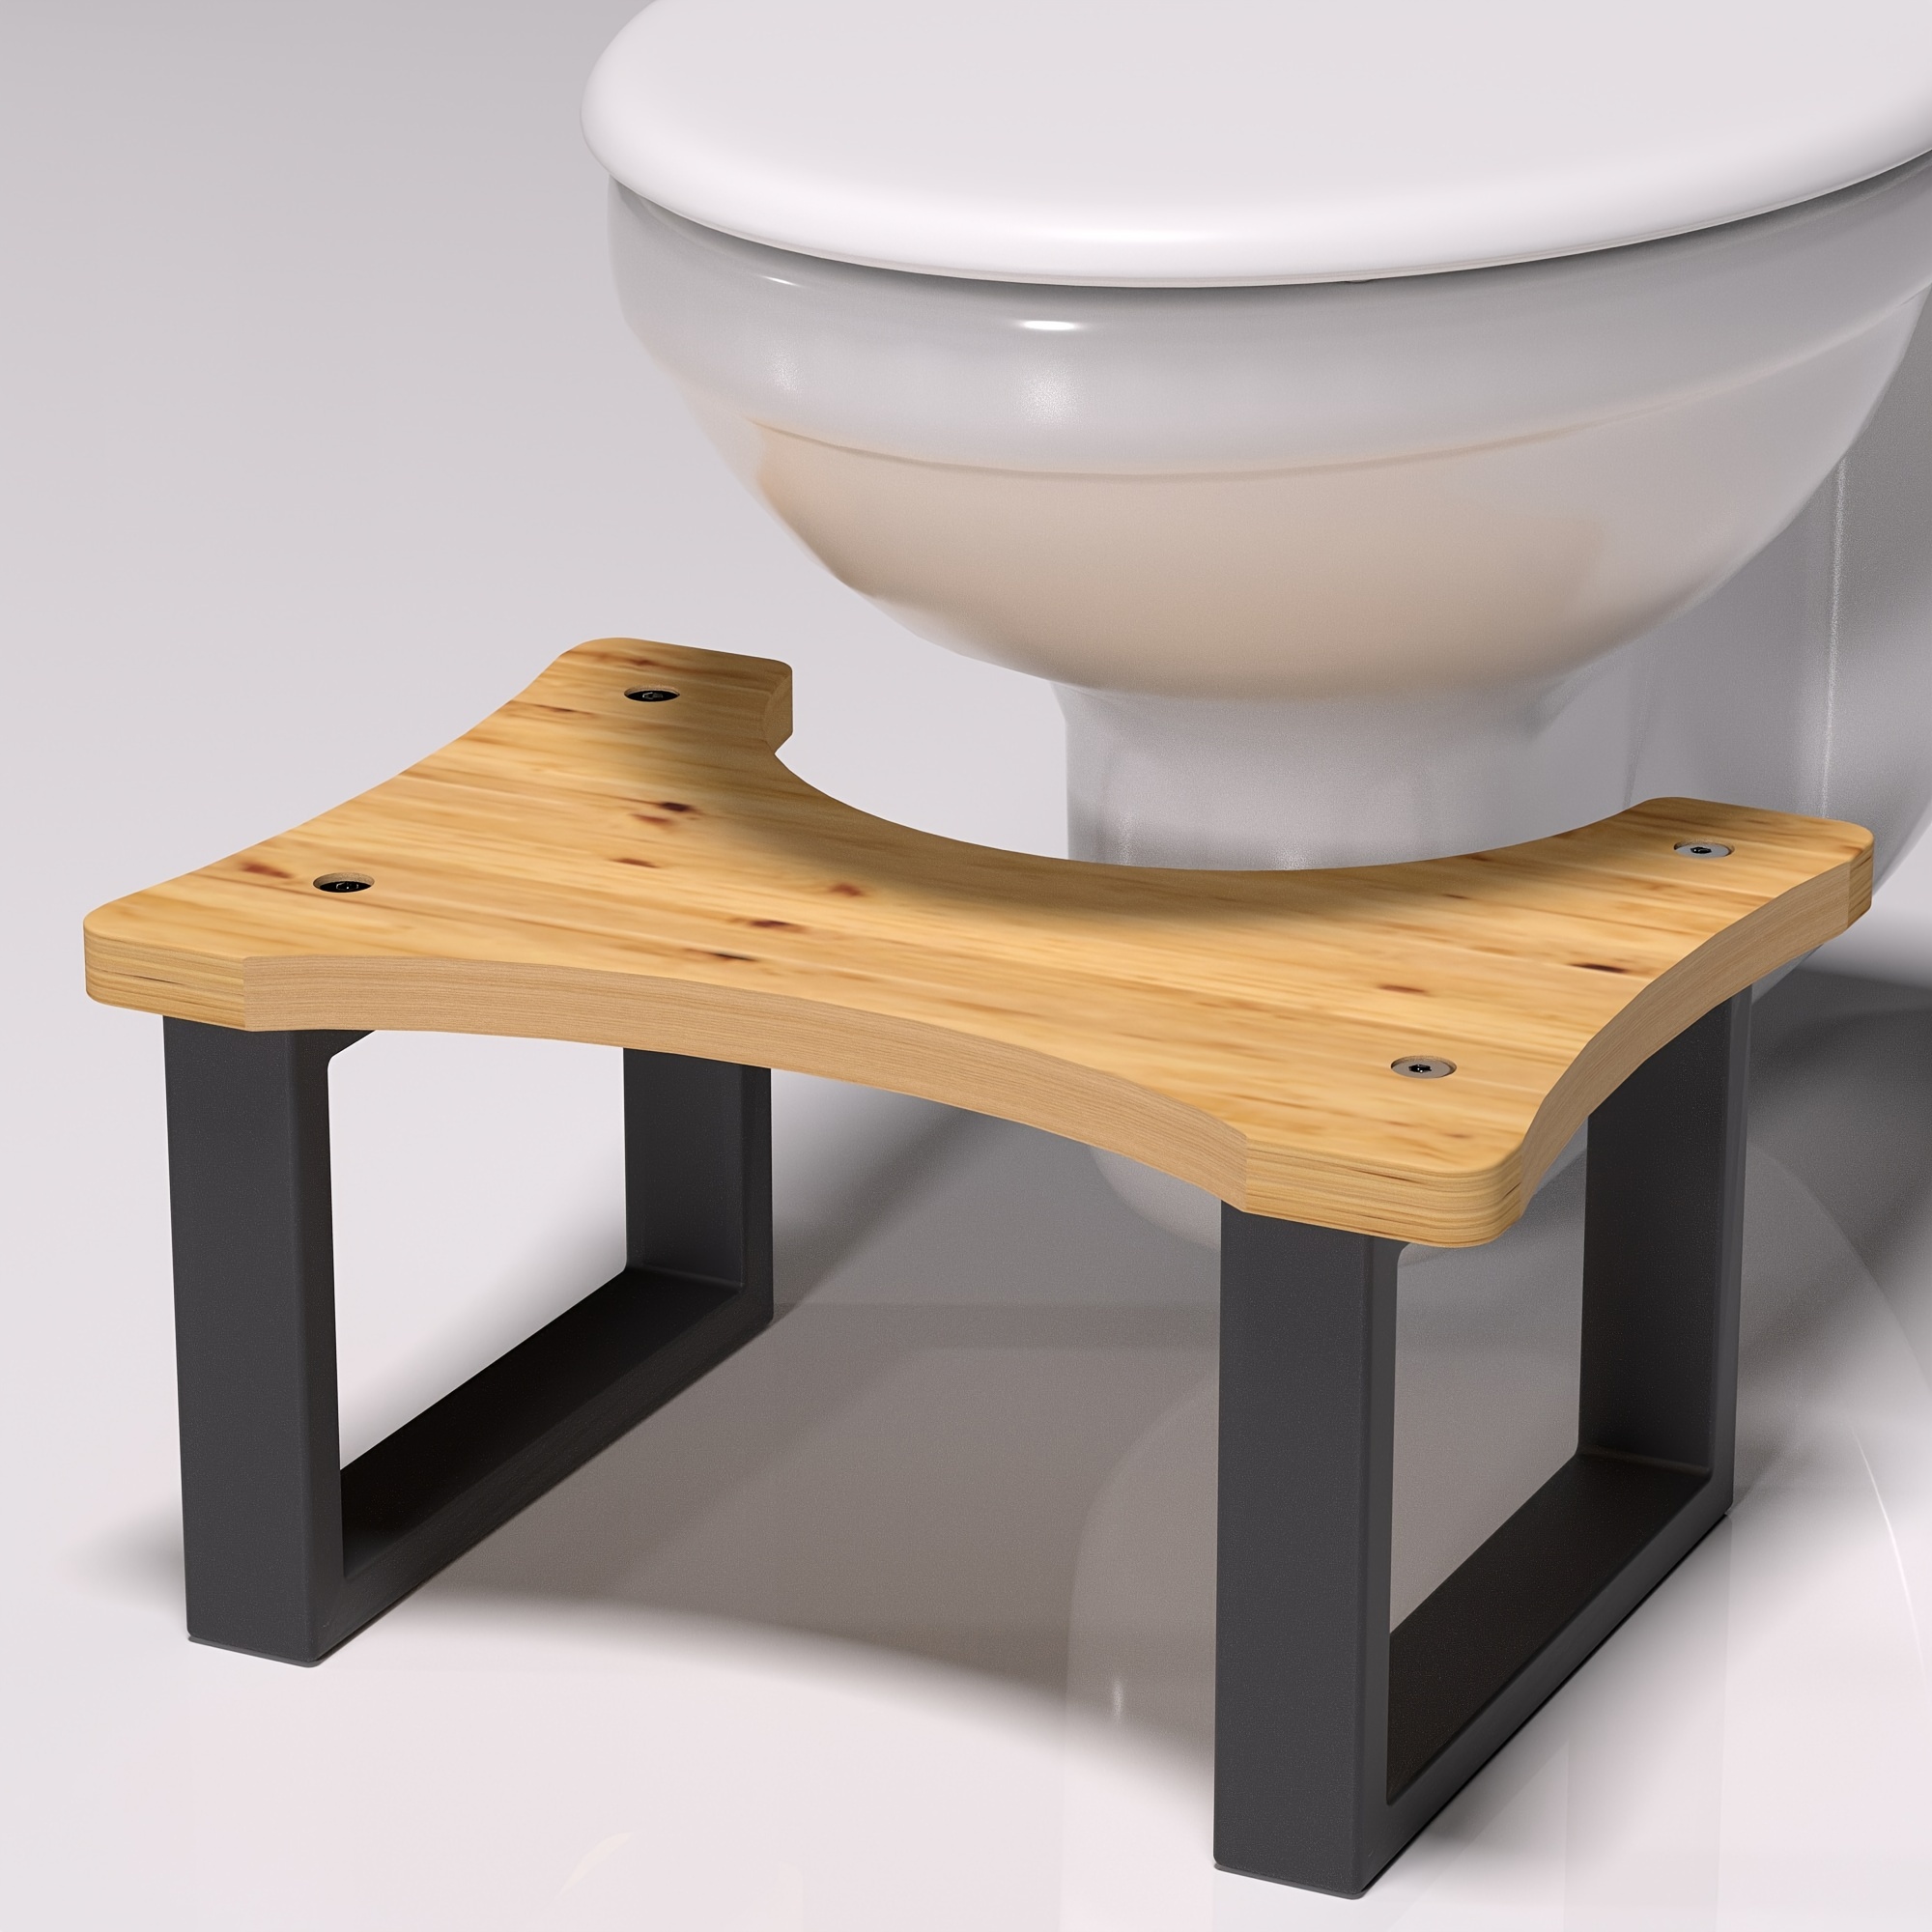 Pour un meilleur fonctionnement de votre système digestif : bricolez un  tabouret de toilette – BRICO BLOG